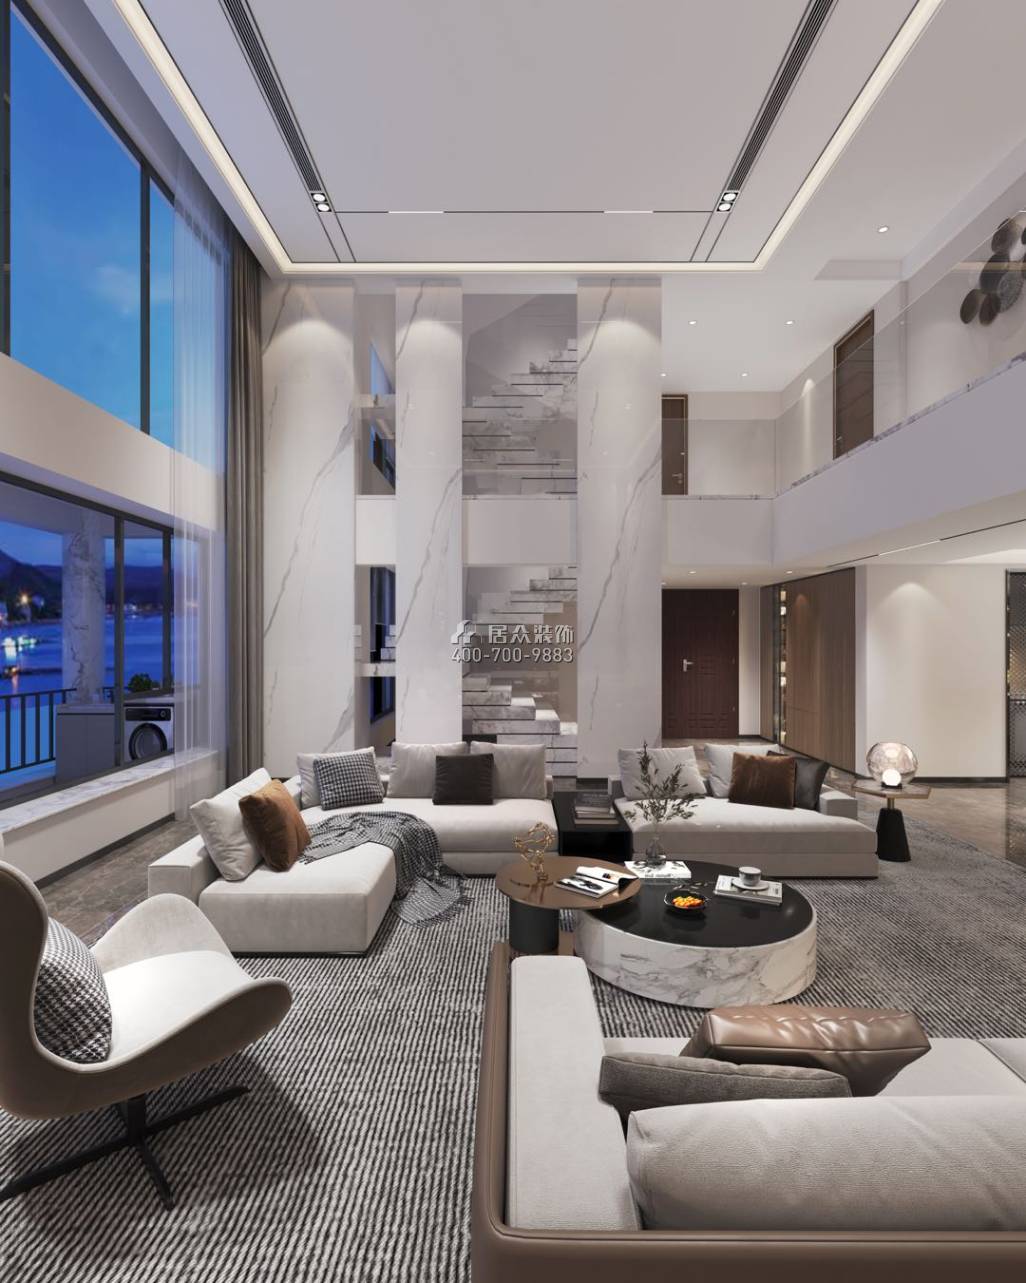 中信紅樹灣-三期638平方米現代簡約風格復式戶型客廳裝修效果圖